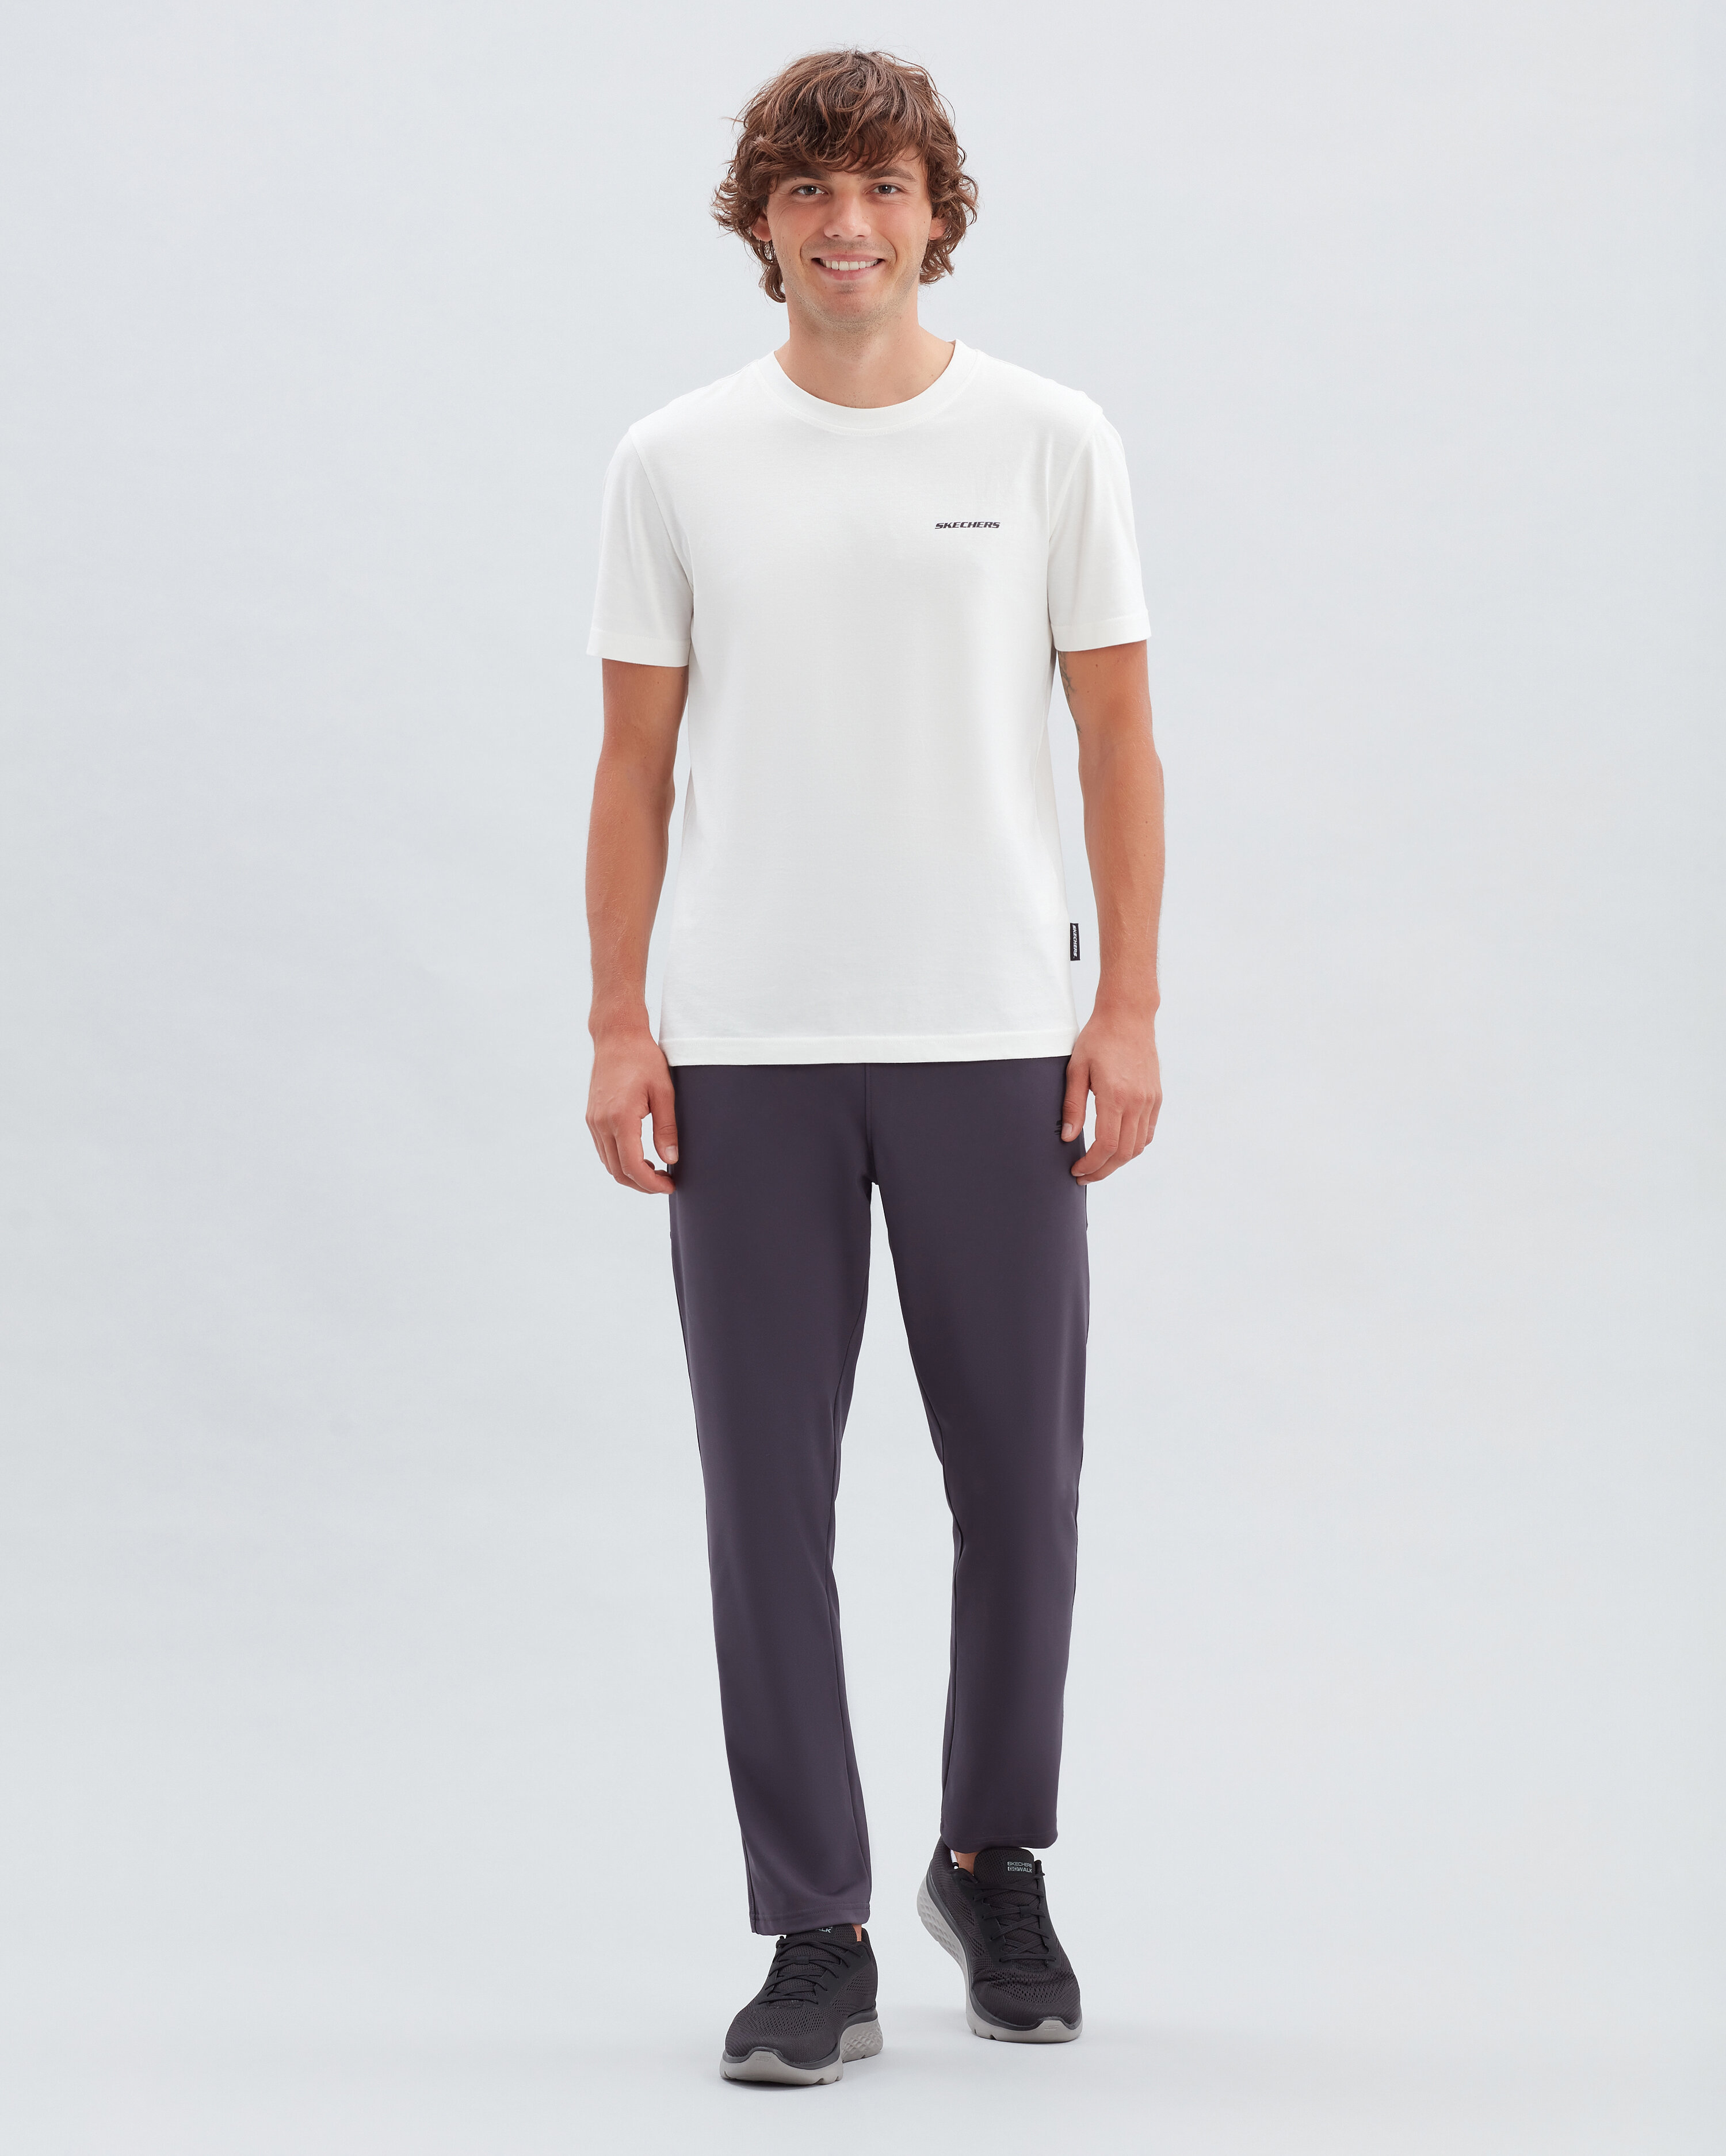 Skechers New Basics Crew Beyaz Tişört (S212910-102)